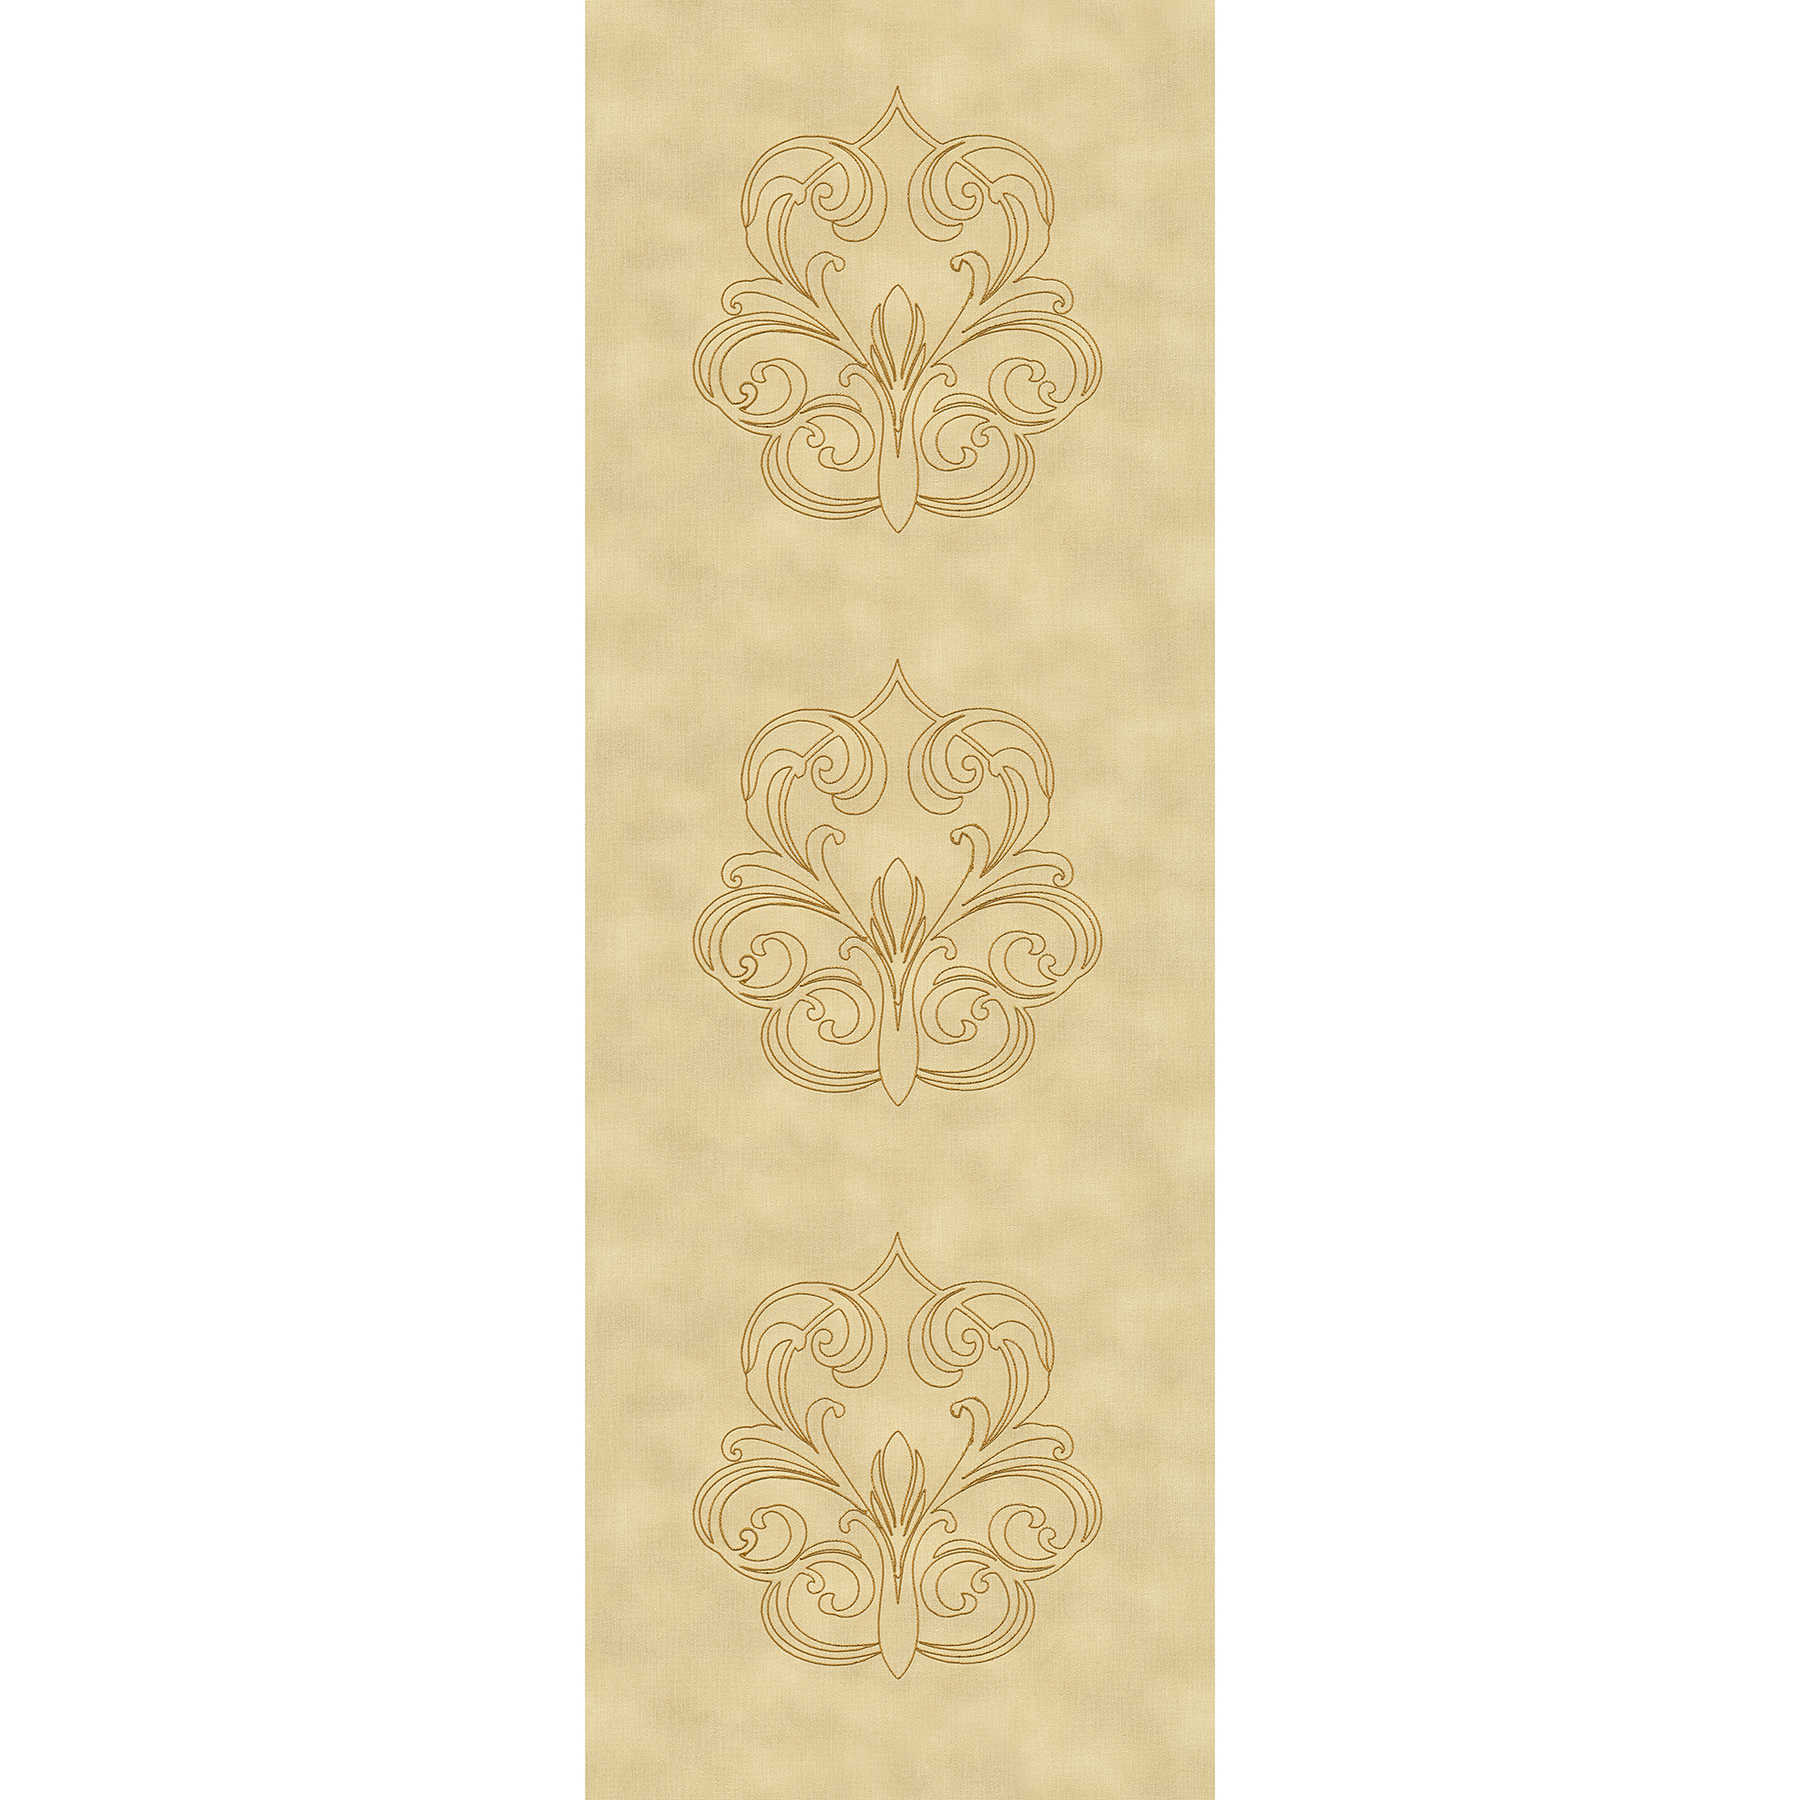         Premium Wandpanel mit Ornamenten auf Textilstruktur – Gelb, Gold
    